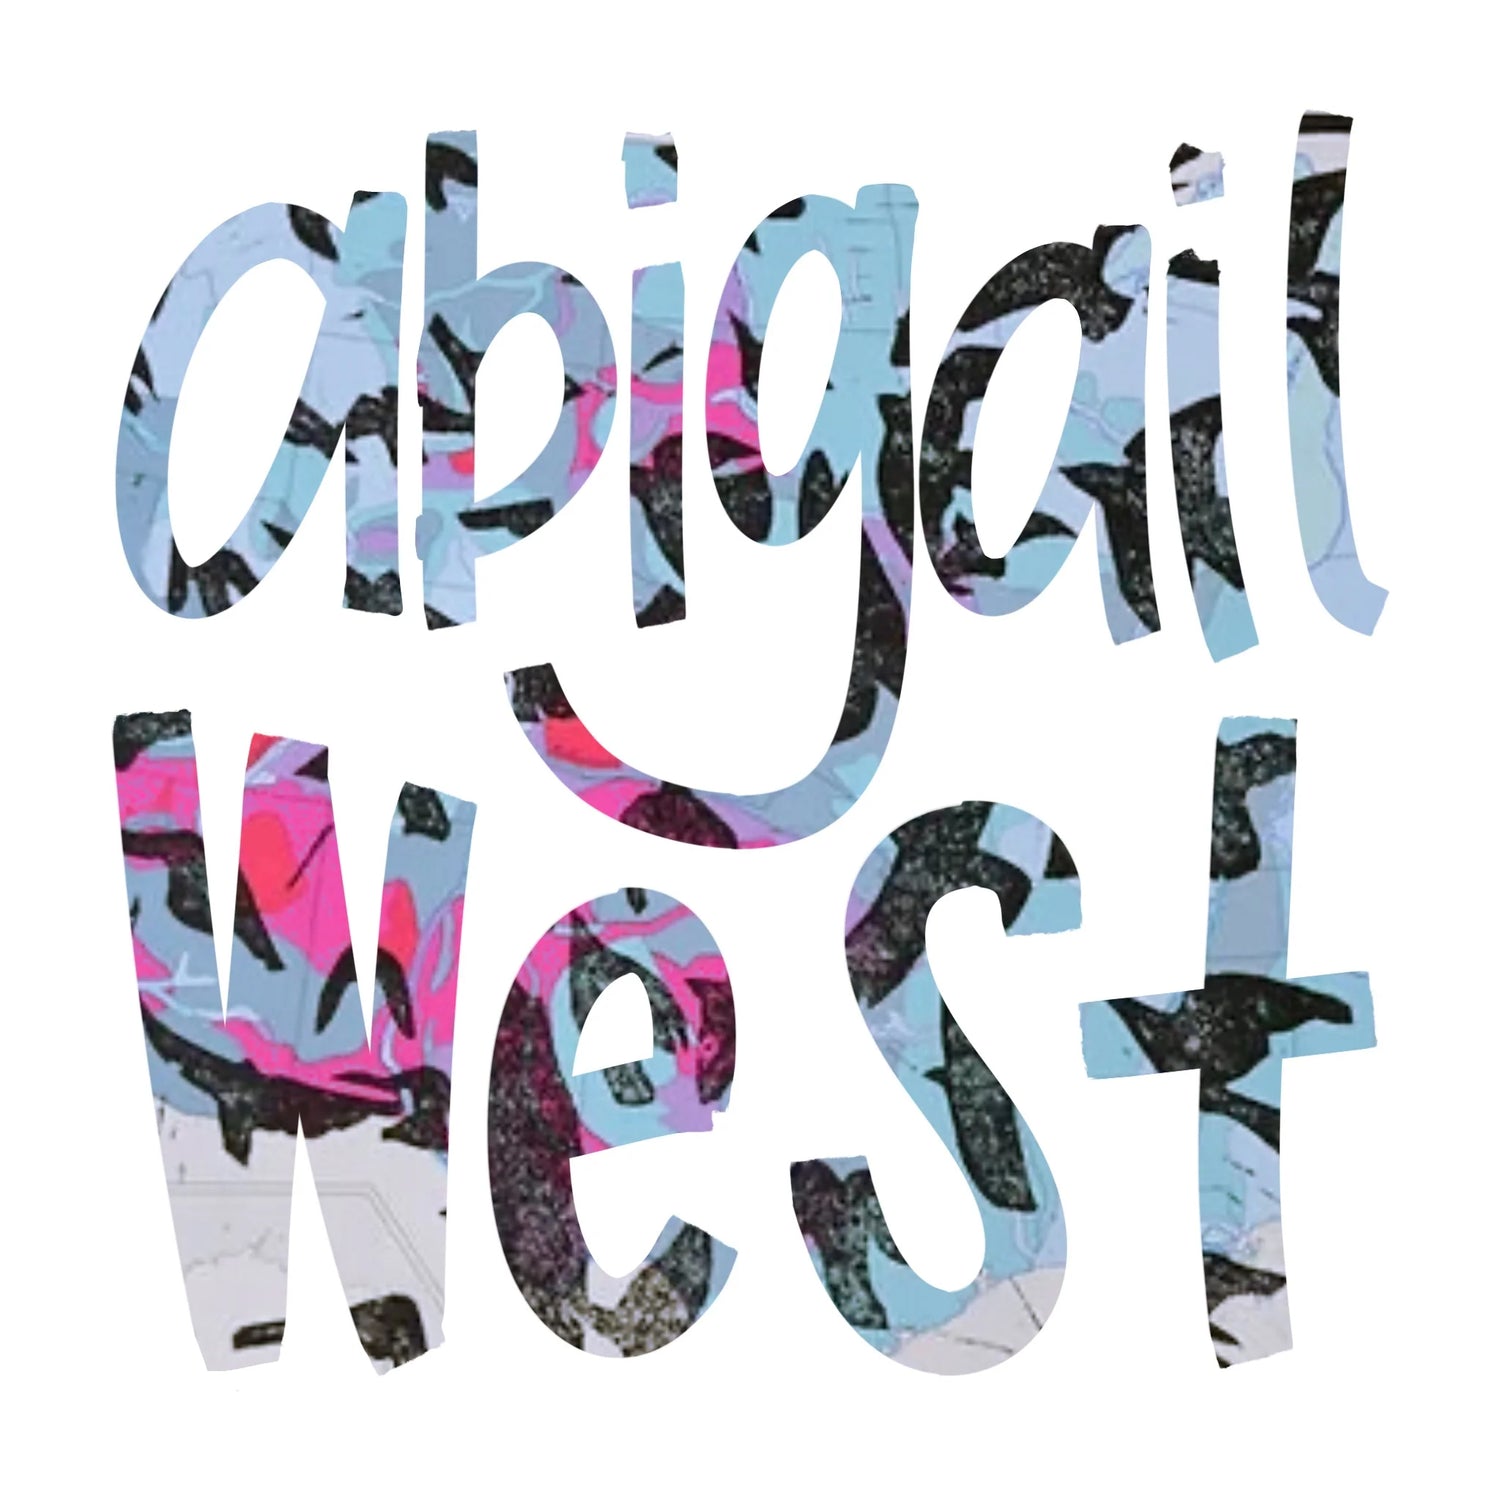 Abigail West